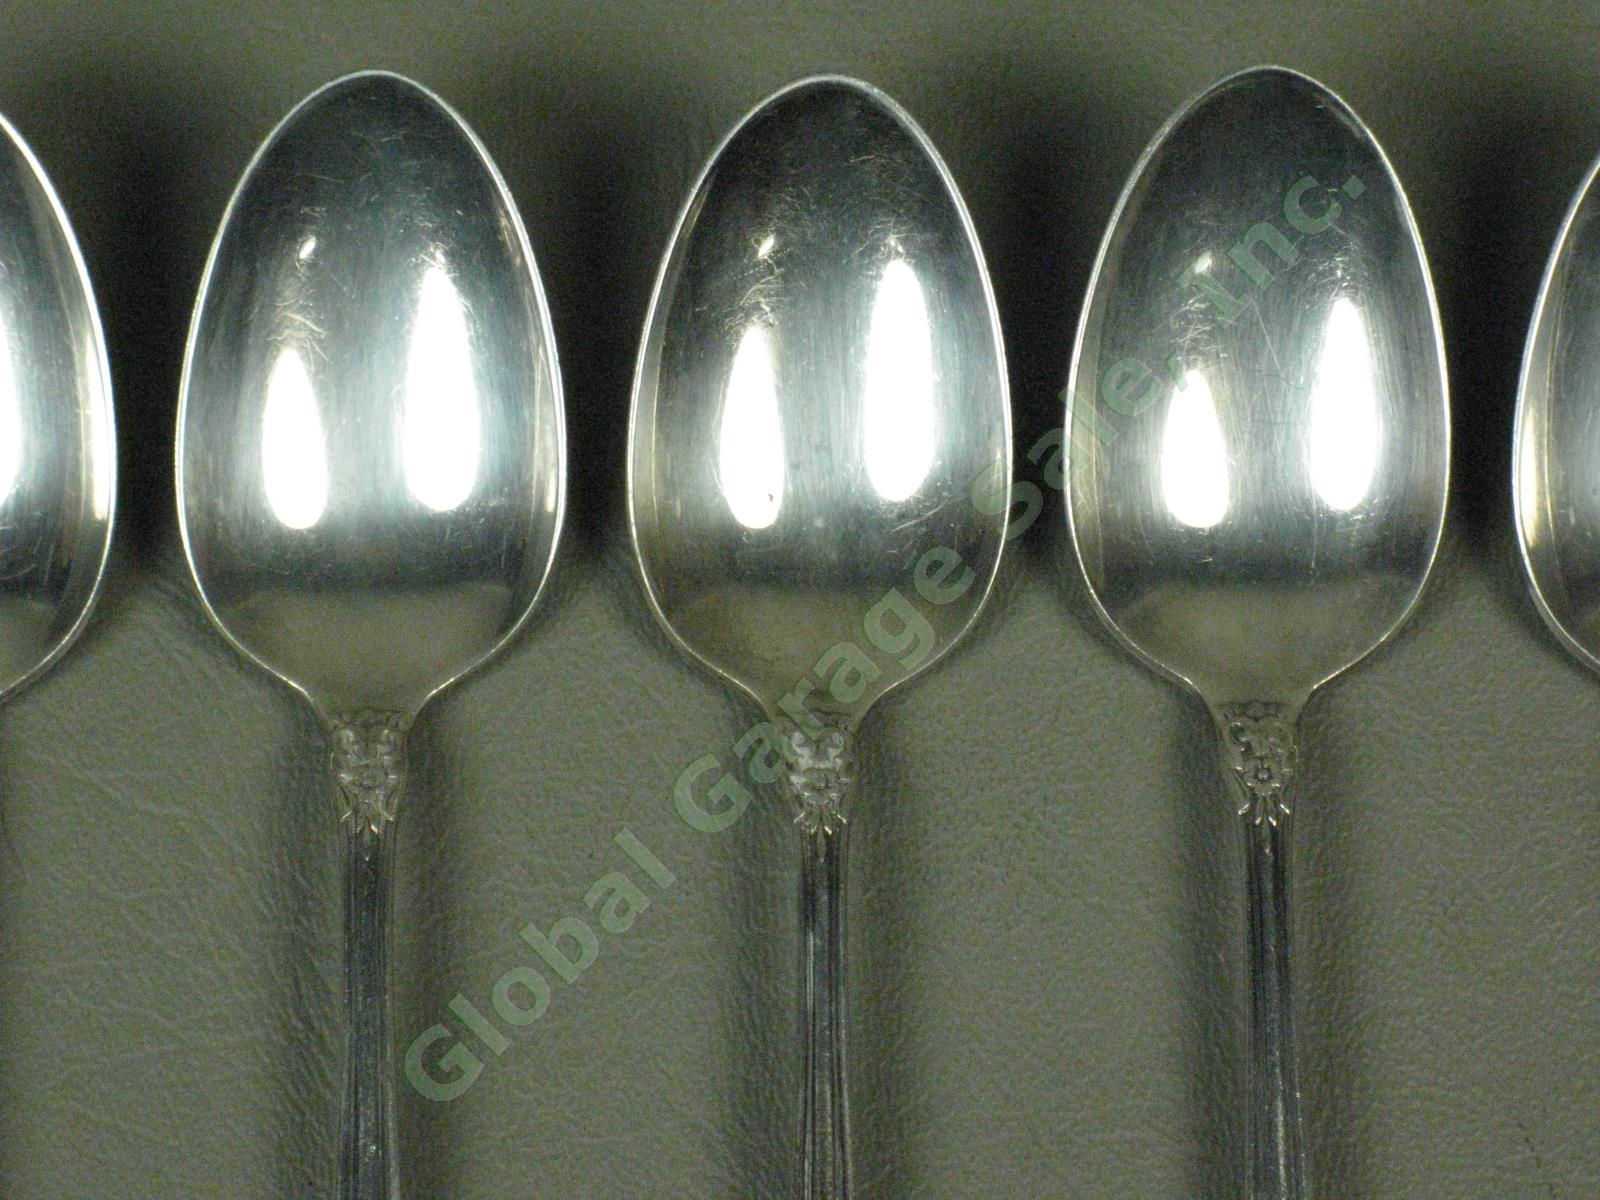 7 State House Inaugural Sterling Silver Teaspoons Spoons Silverware Set 232 Gram 1